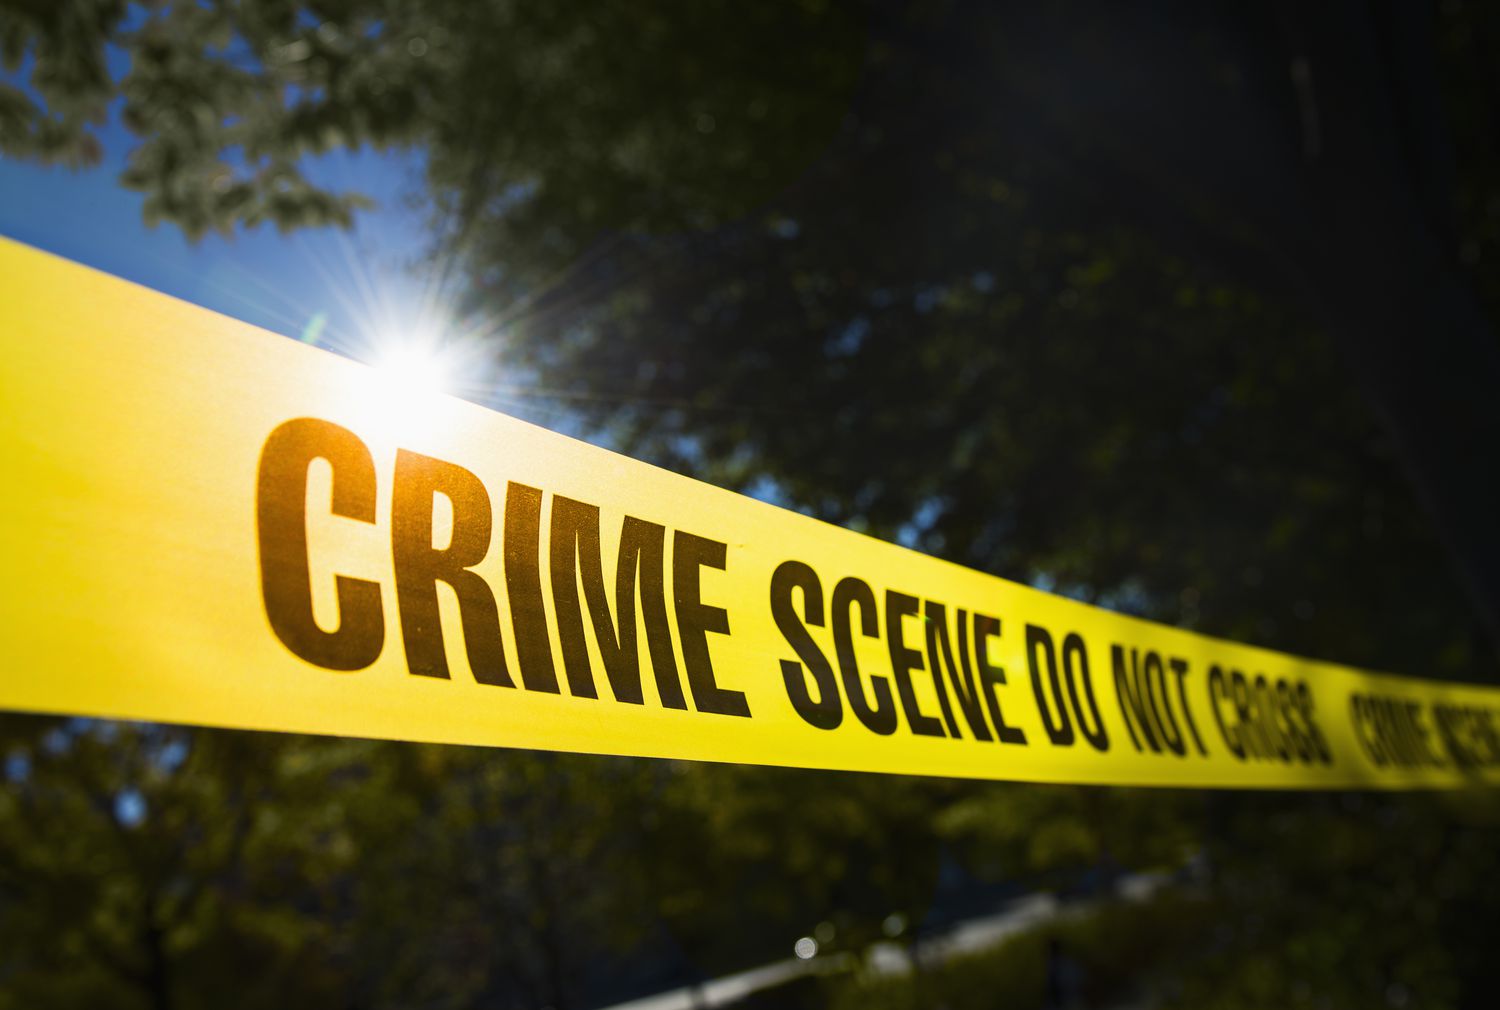 Idaho Murder Suspect: An Update on the Investigation